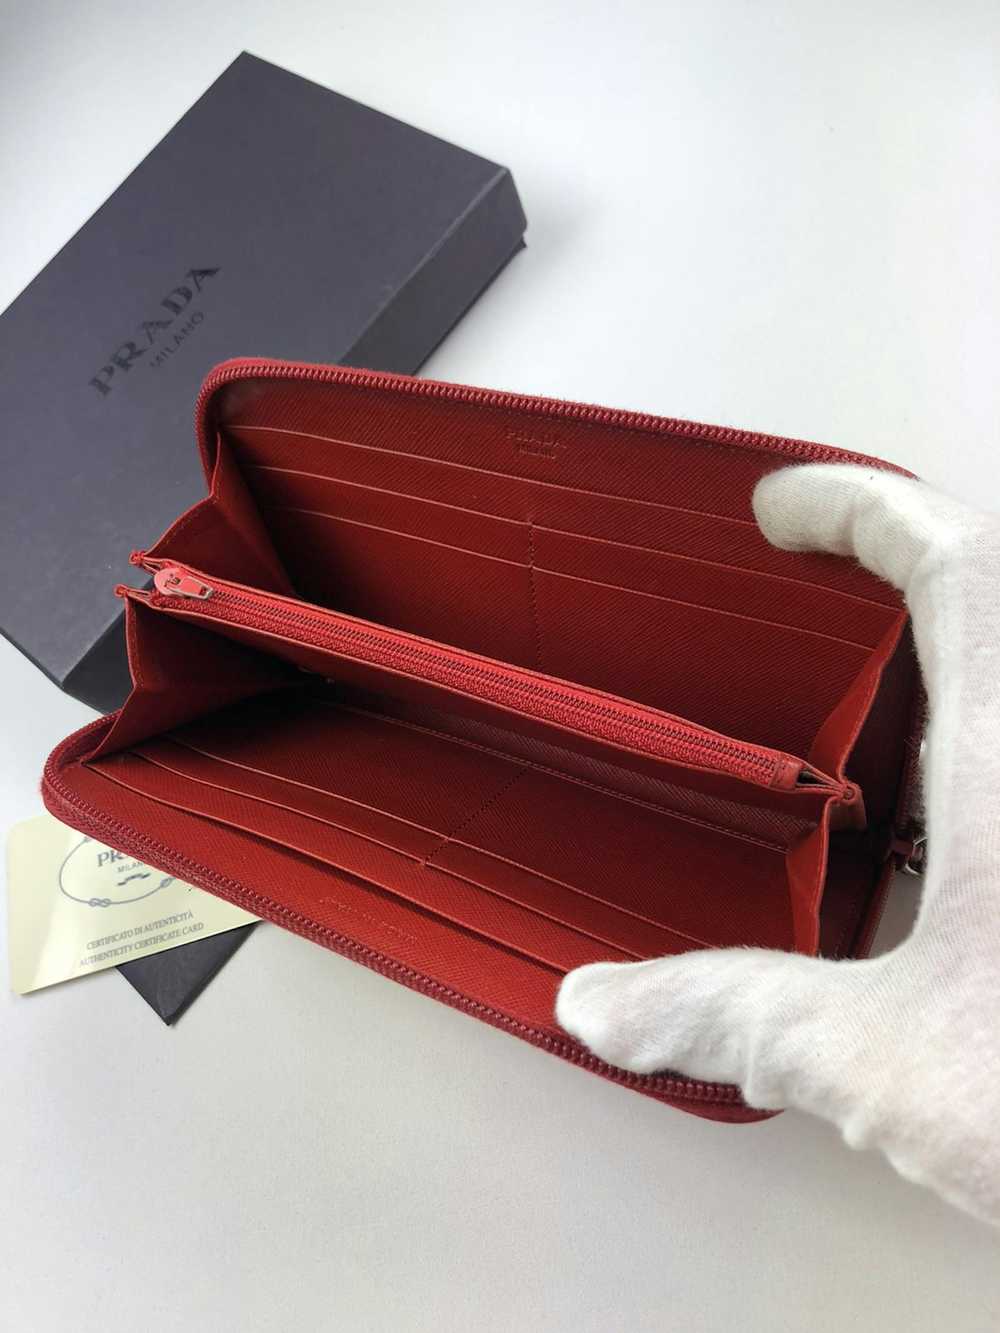 Prada Prada tessuto red nylon zippy wallet - image 4